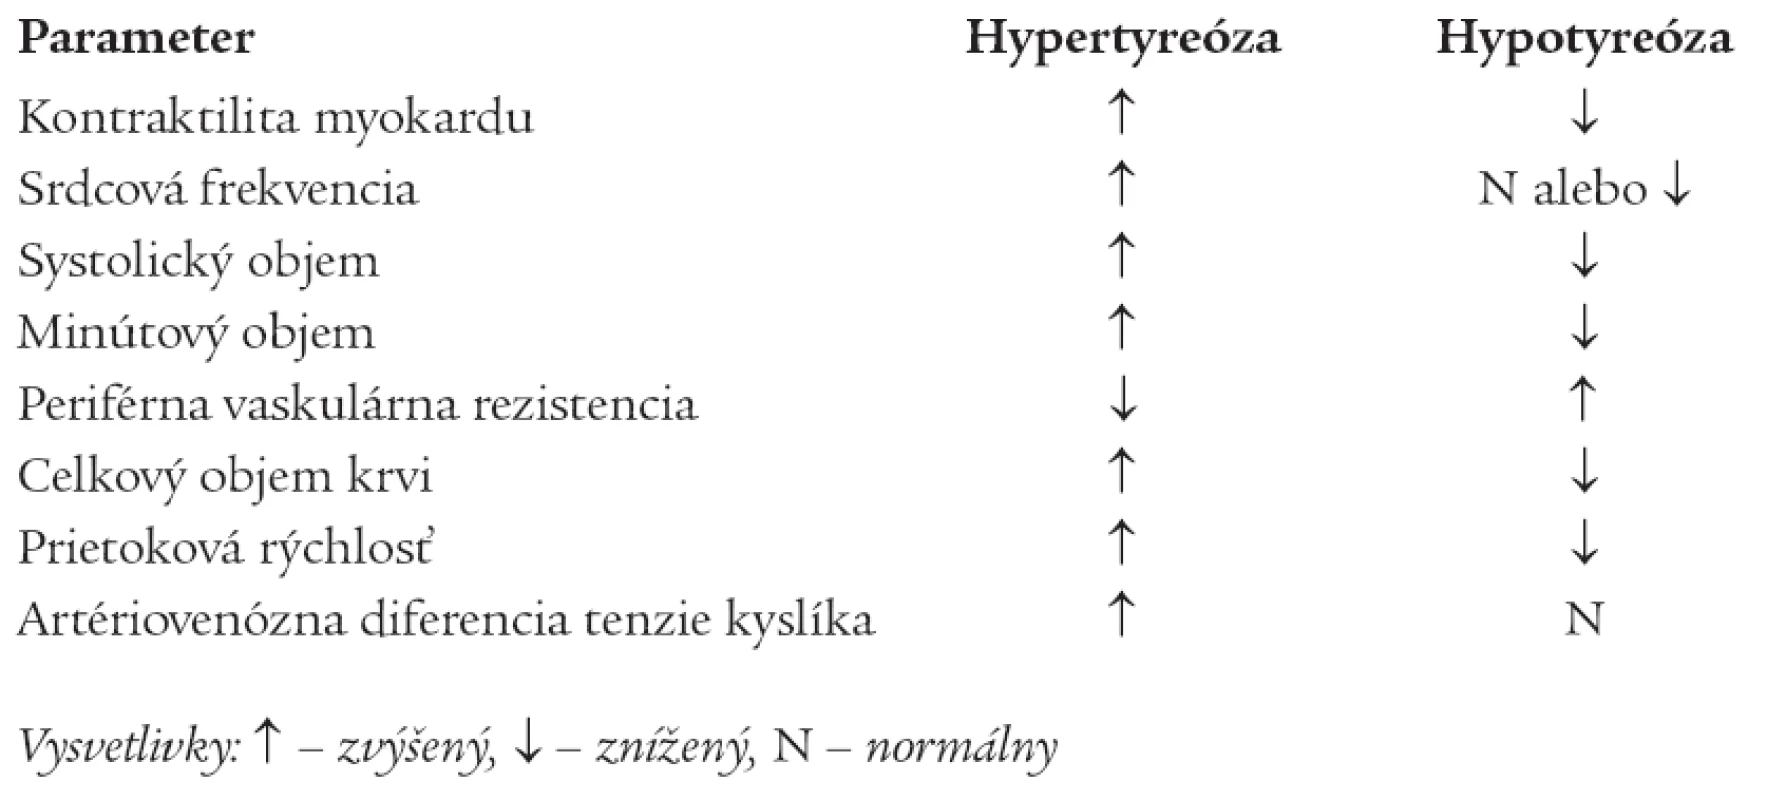 Základné hemodynamické zmeny pri hypotyróze a hypertyreóze.